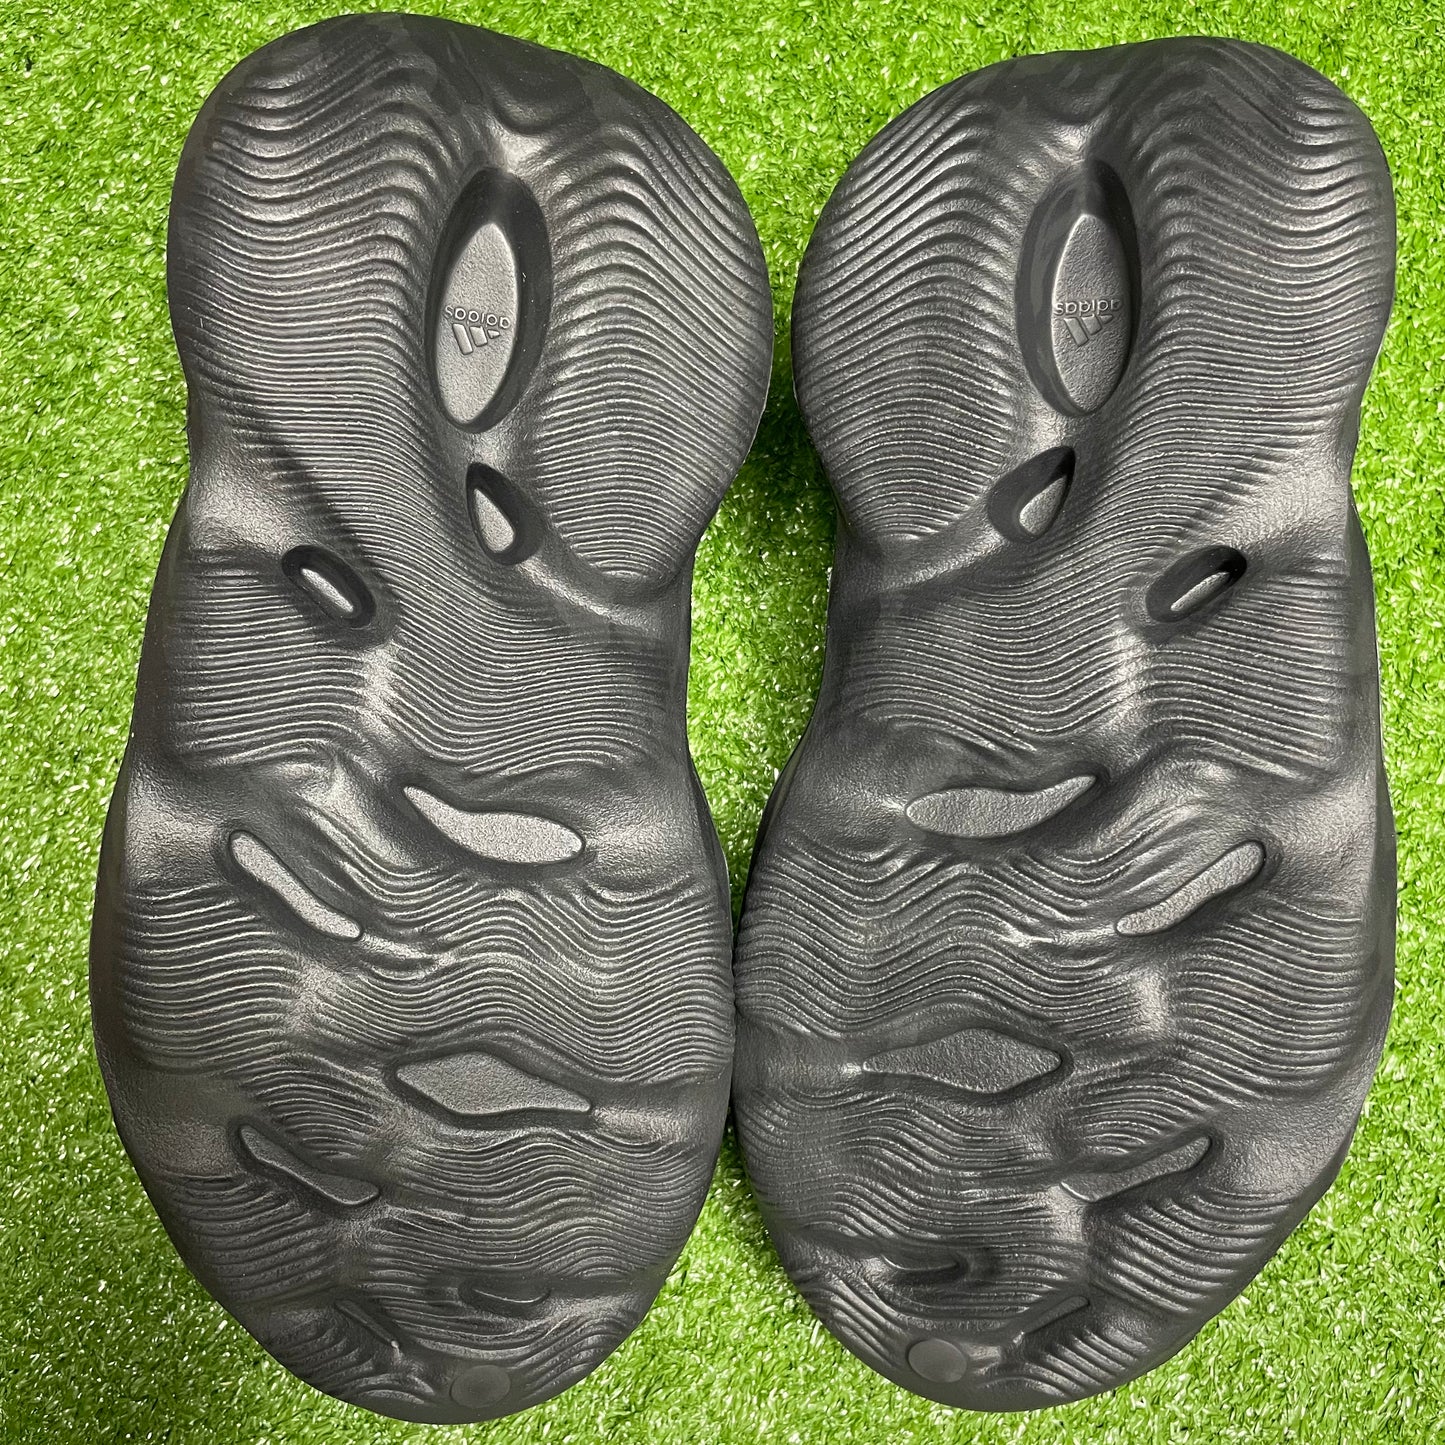 adidas Yeezy Foam Runner “Onyx”